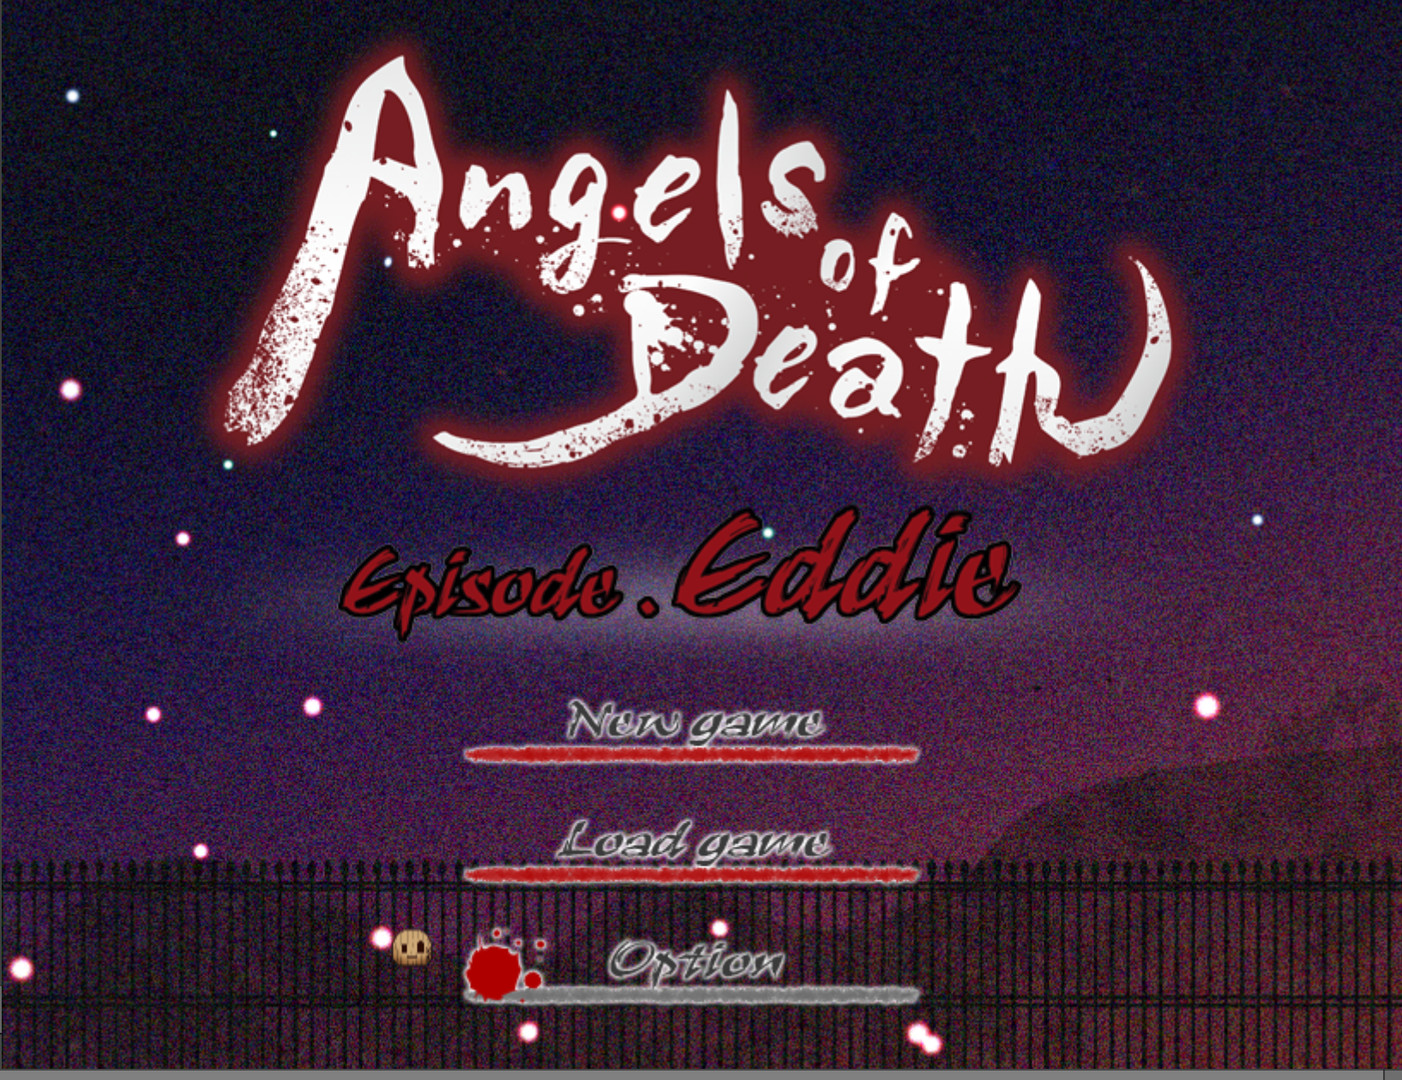 Angels of Death Episode.Eddie on Steam